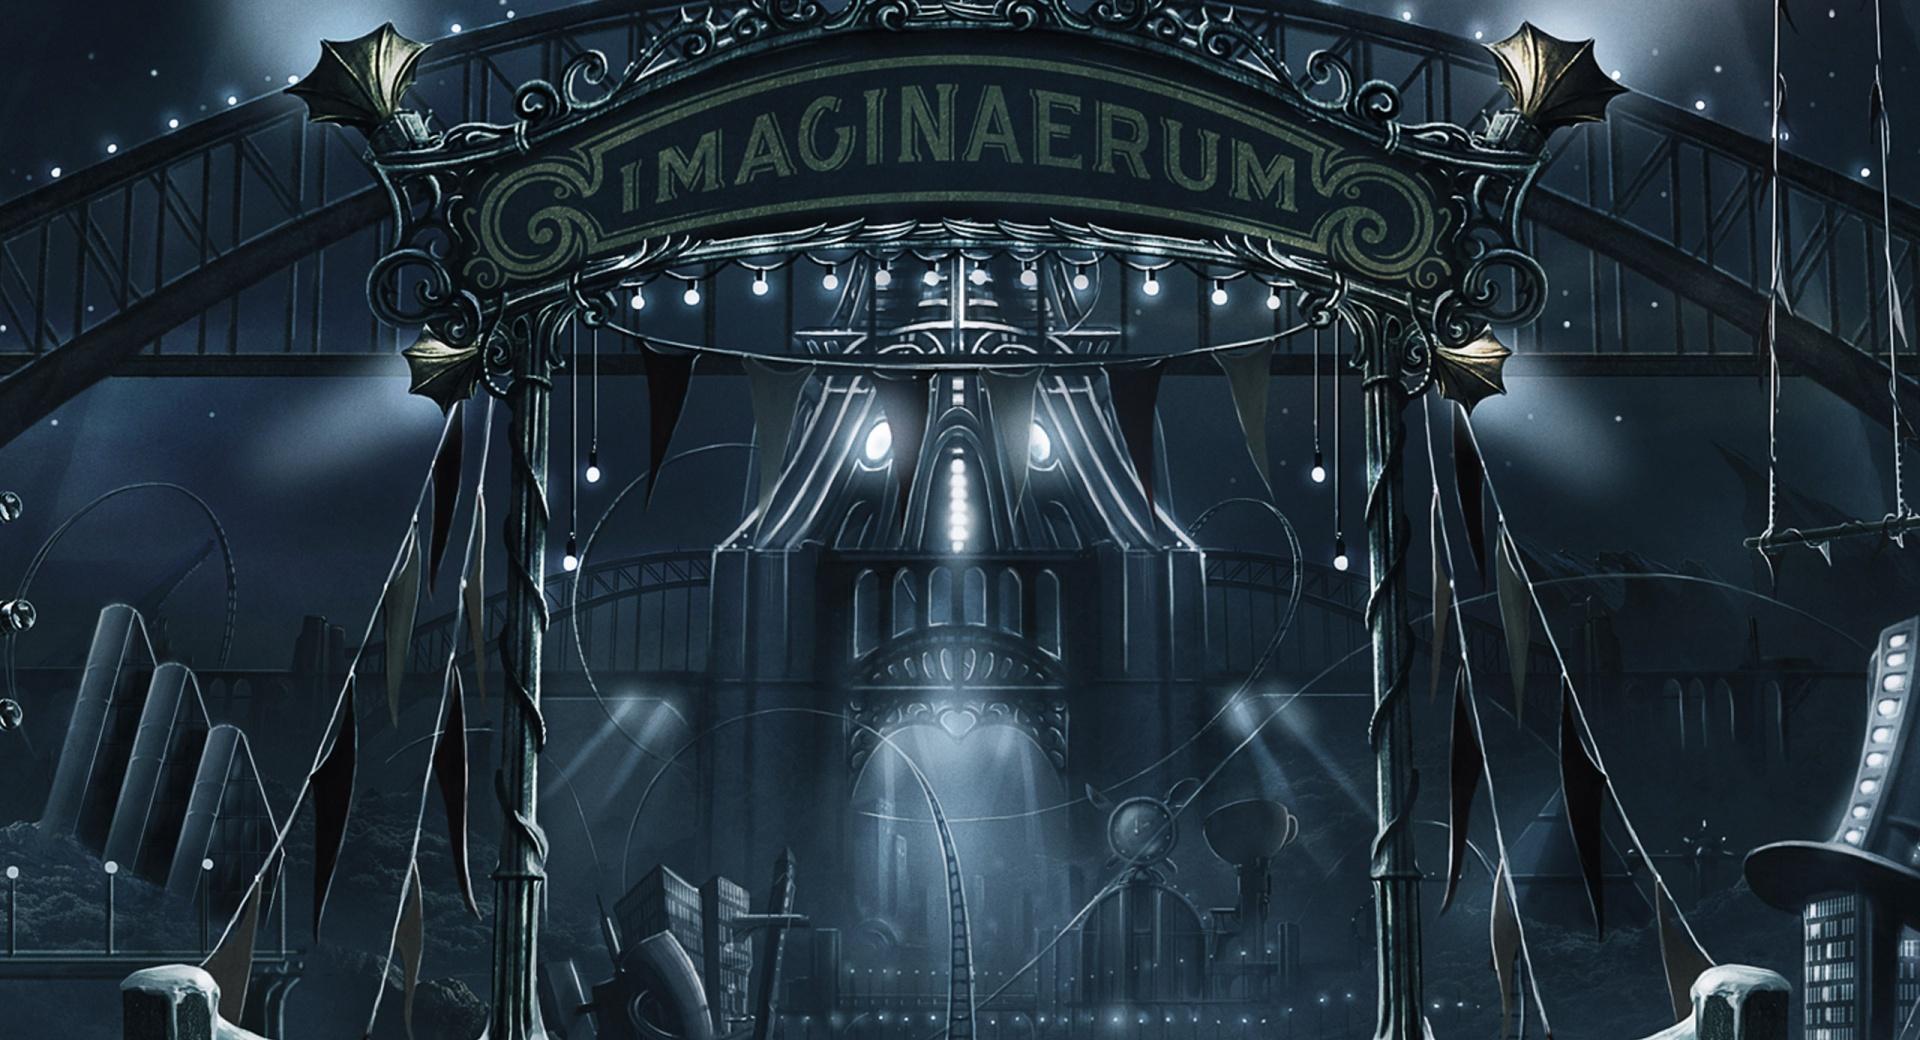 Imaginaerum - Nightwish wallpapers HD quality